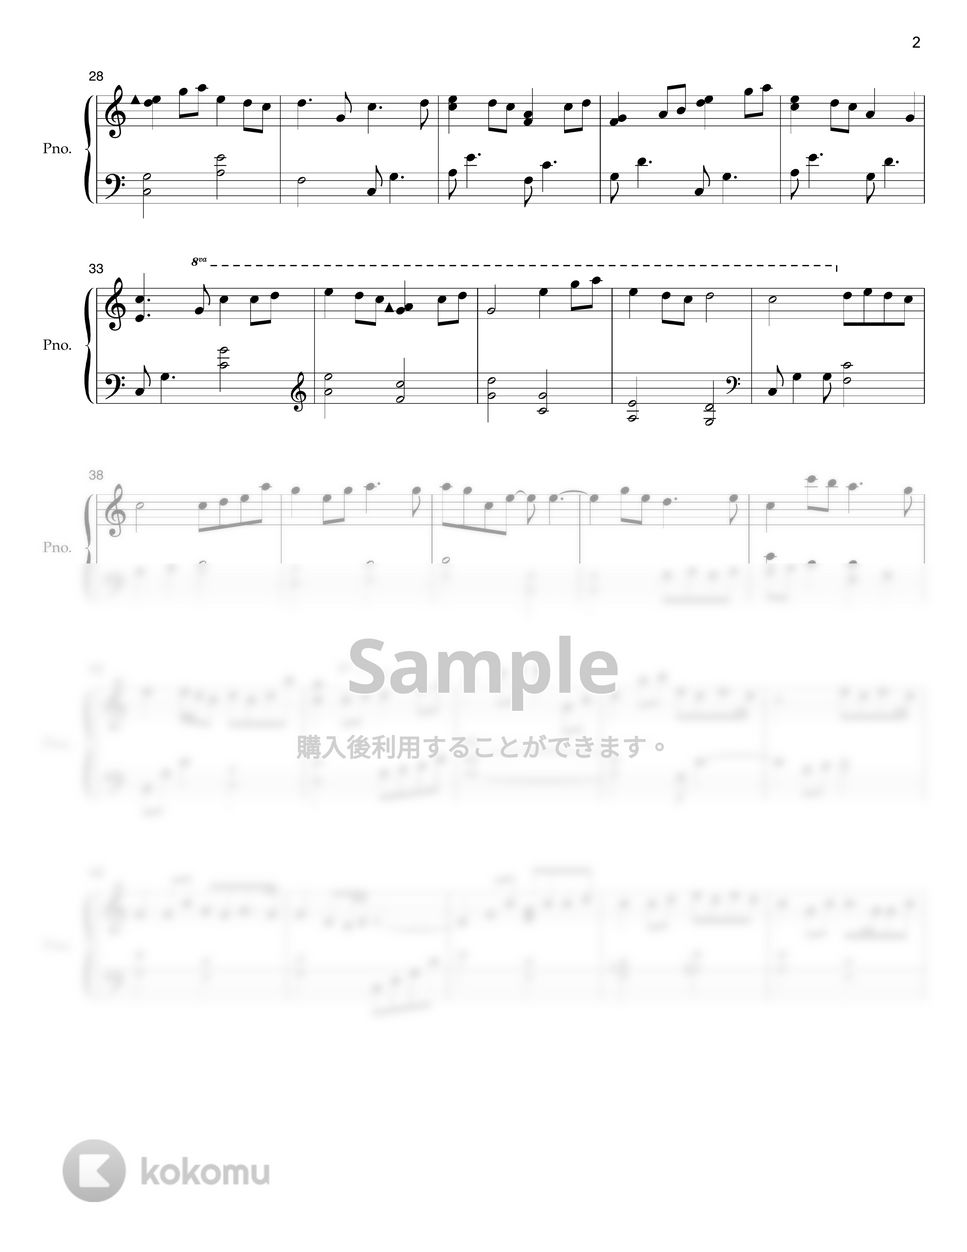 ソン・ガイン(愛の不時着OST) - 心の写真 (初級バージョン) by Brittenssem